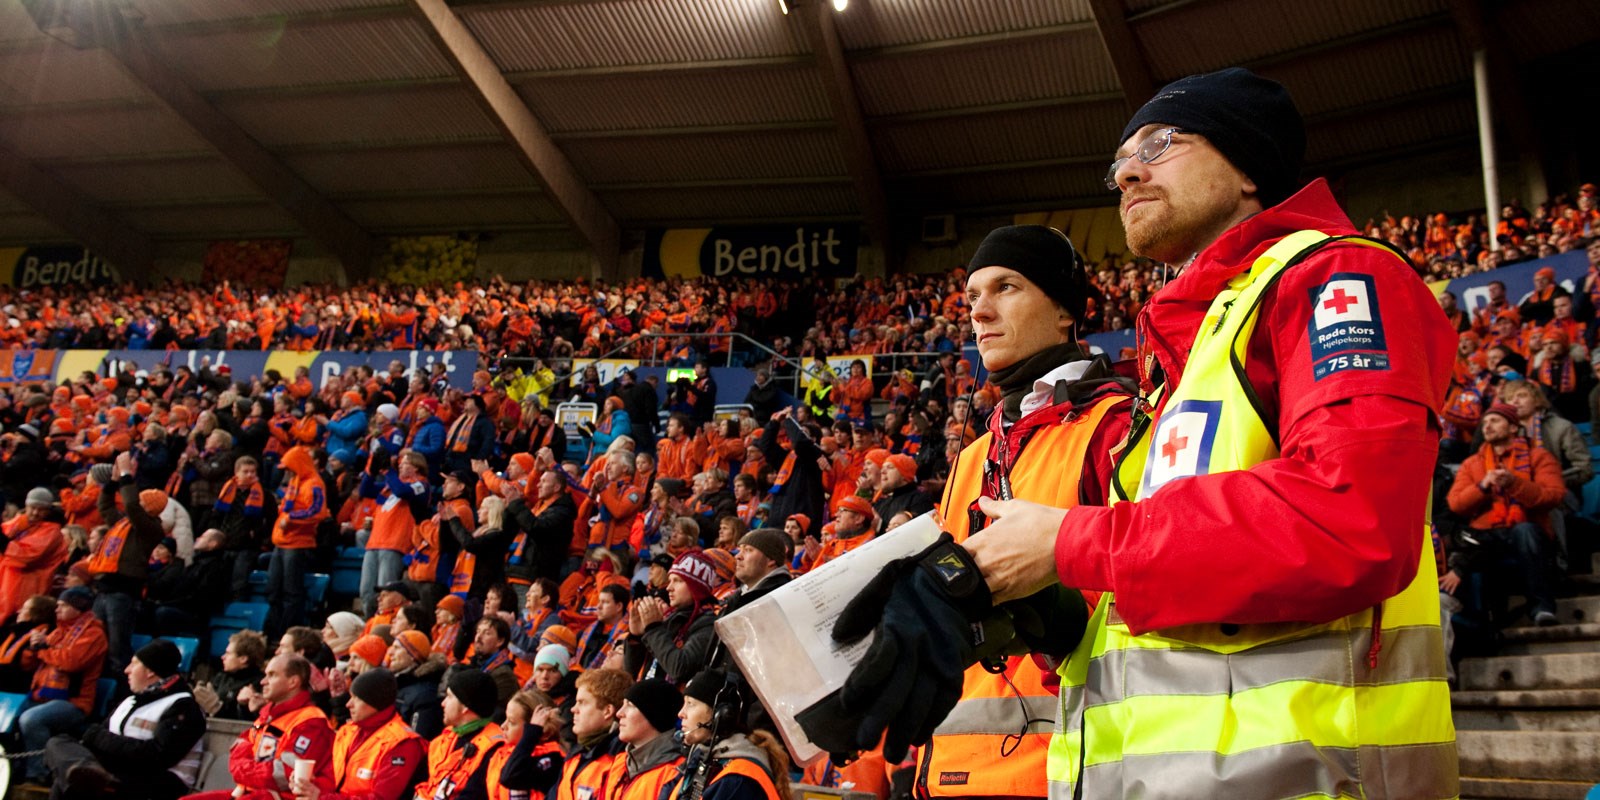 Bilde viser publikum på stadion med 2 personer i front far Røde Kors Hjelpekorps